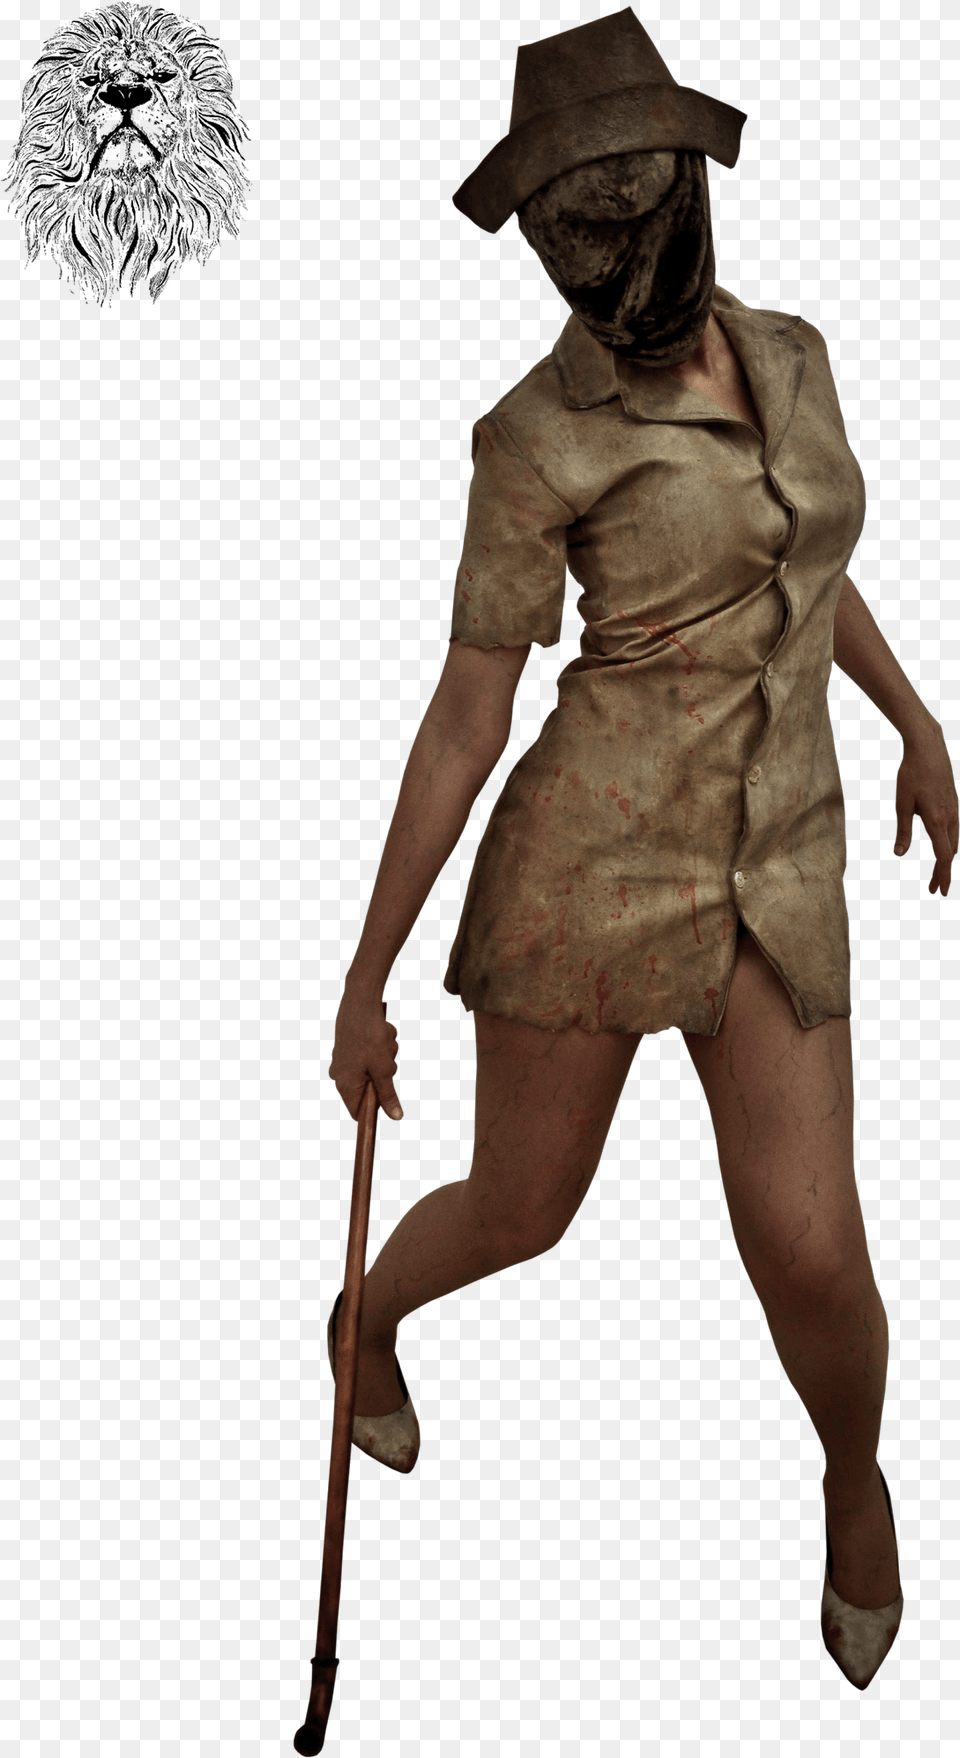 Jordan Clark Silent Hill Medsestri Iz Sajlent Hilla, Person, Stick, Clothing, Costume Free Png Download